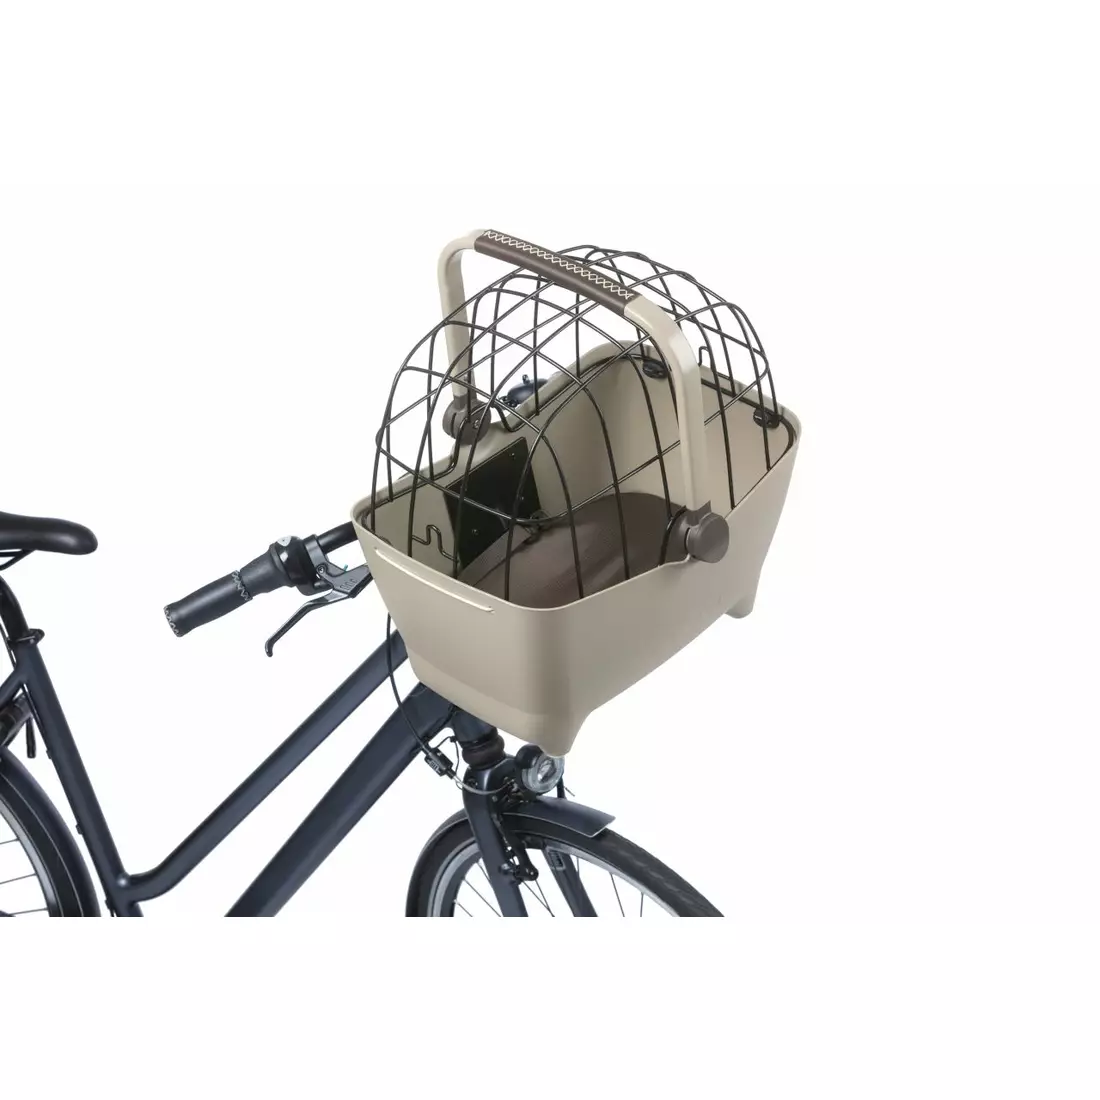 BASIL BUDDY KF kerékpár első kosár kutyának való párnával, barna